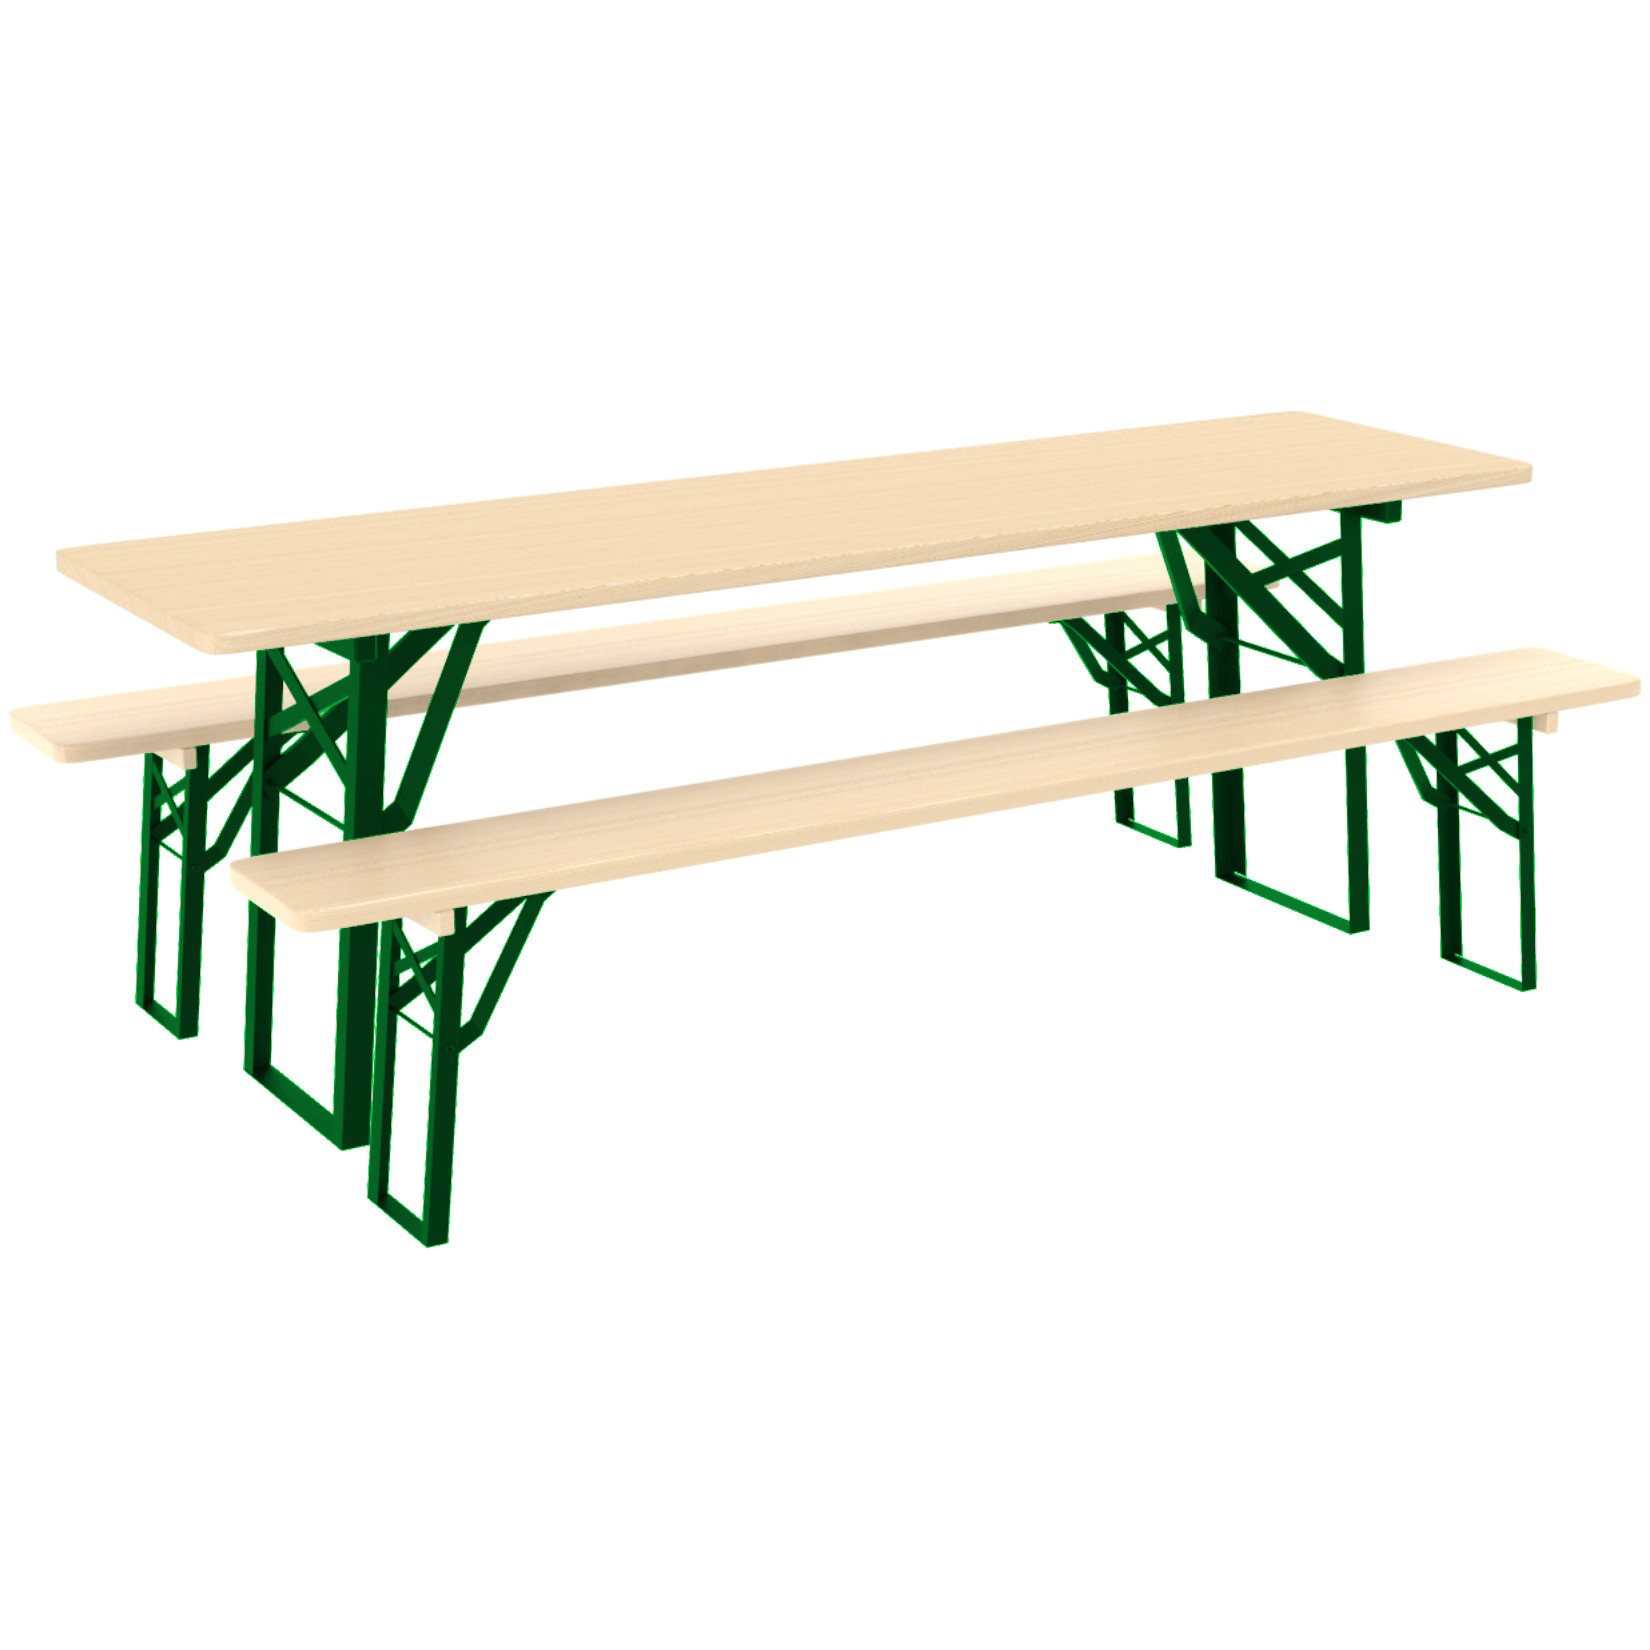 Stół piknikowy z ławkami o długości 220 cm firmy Malow